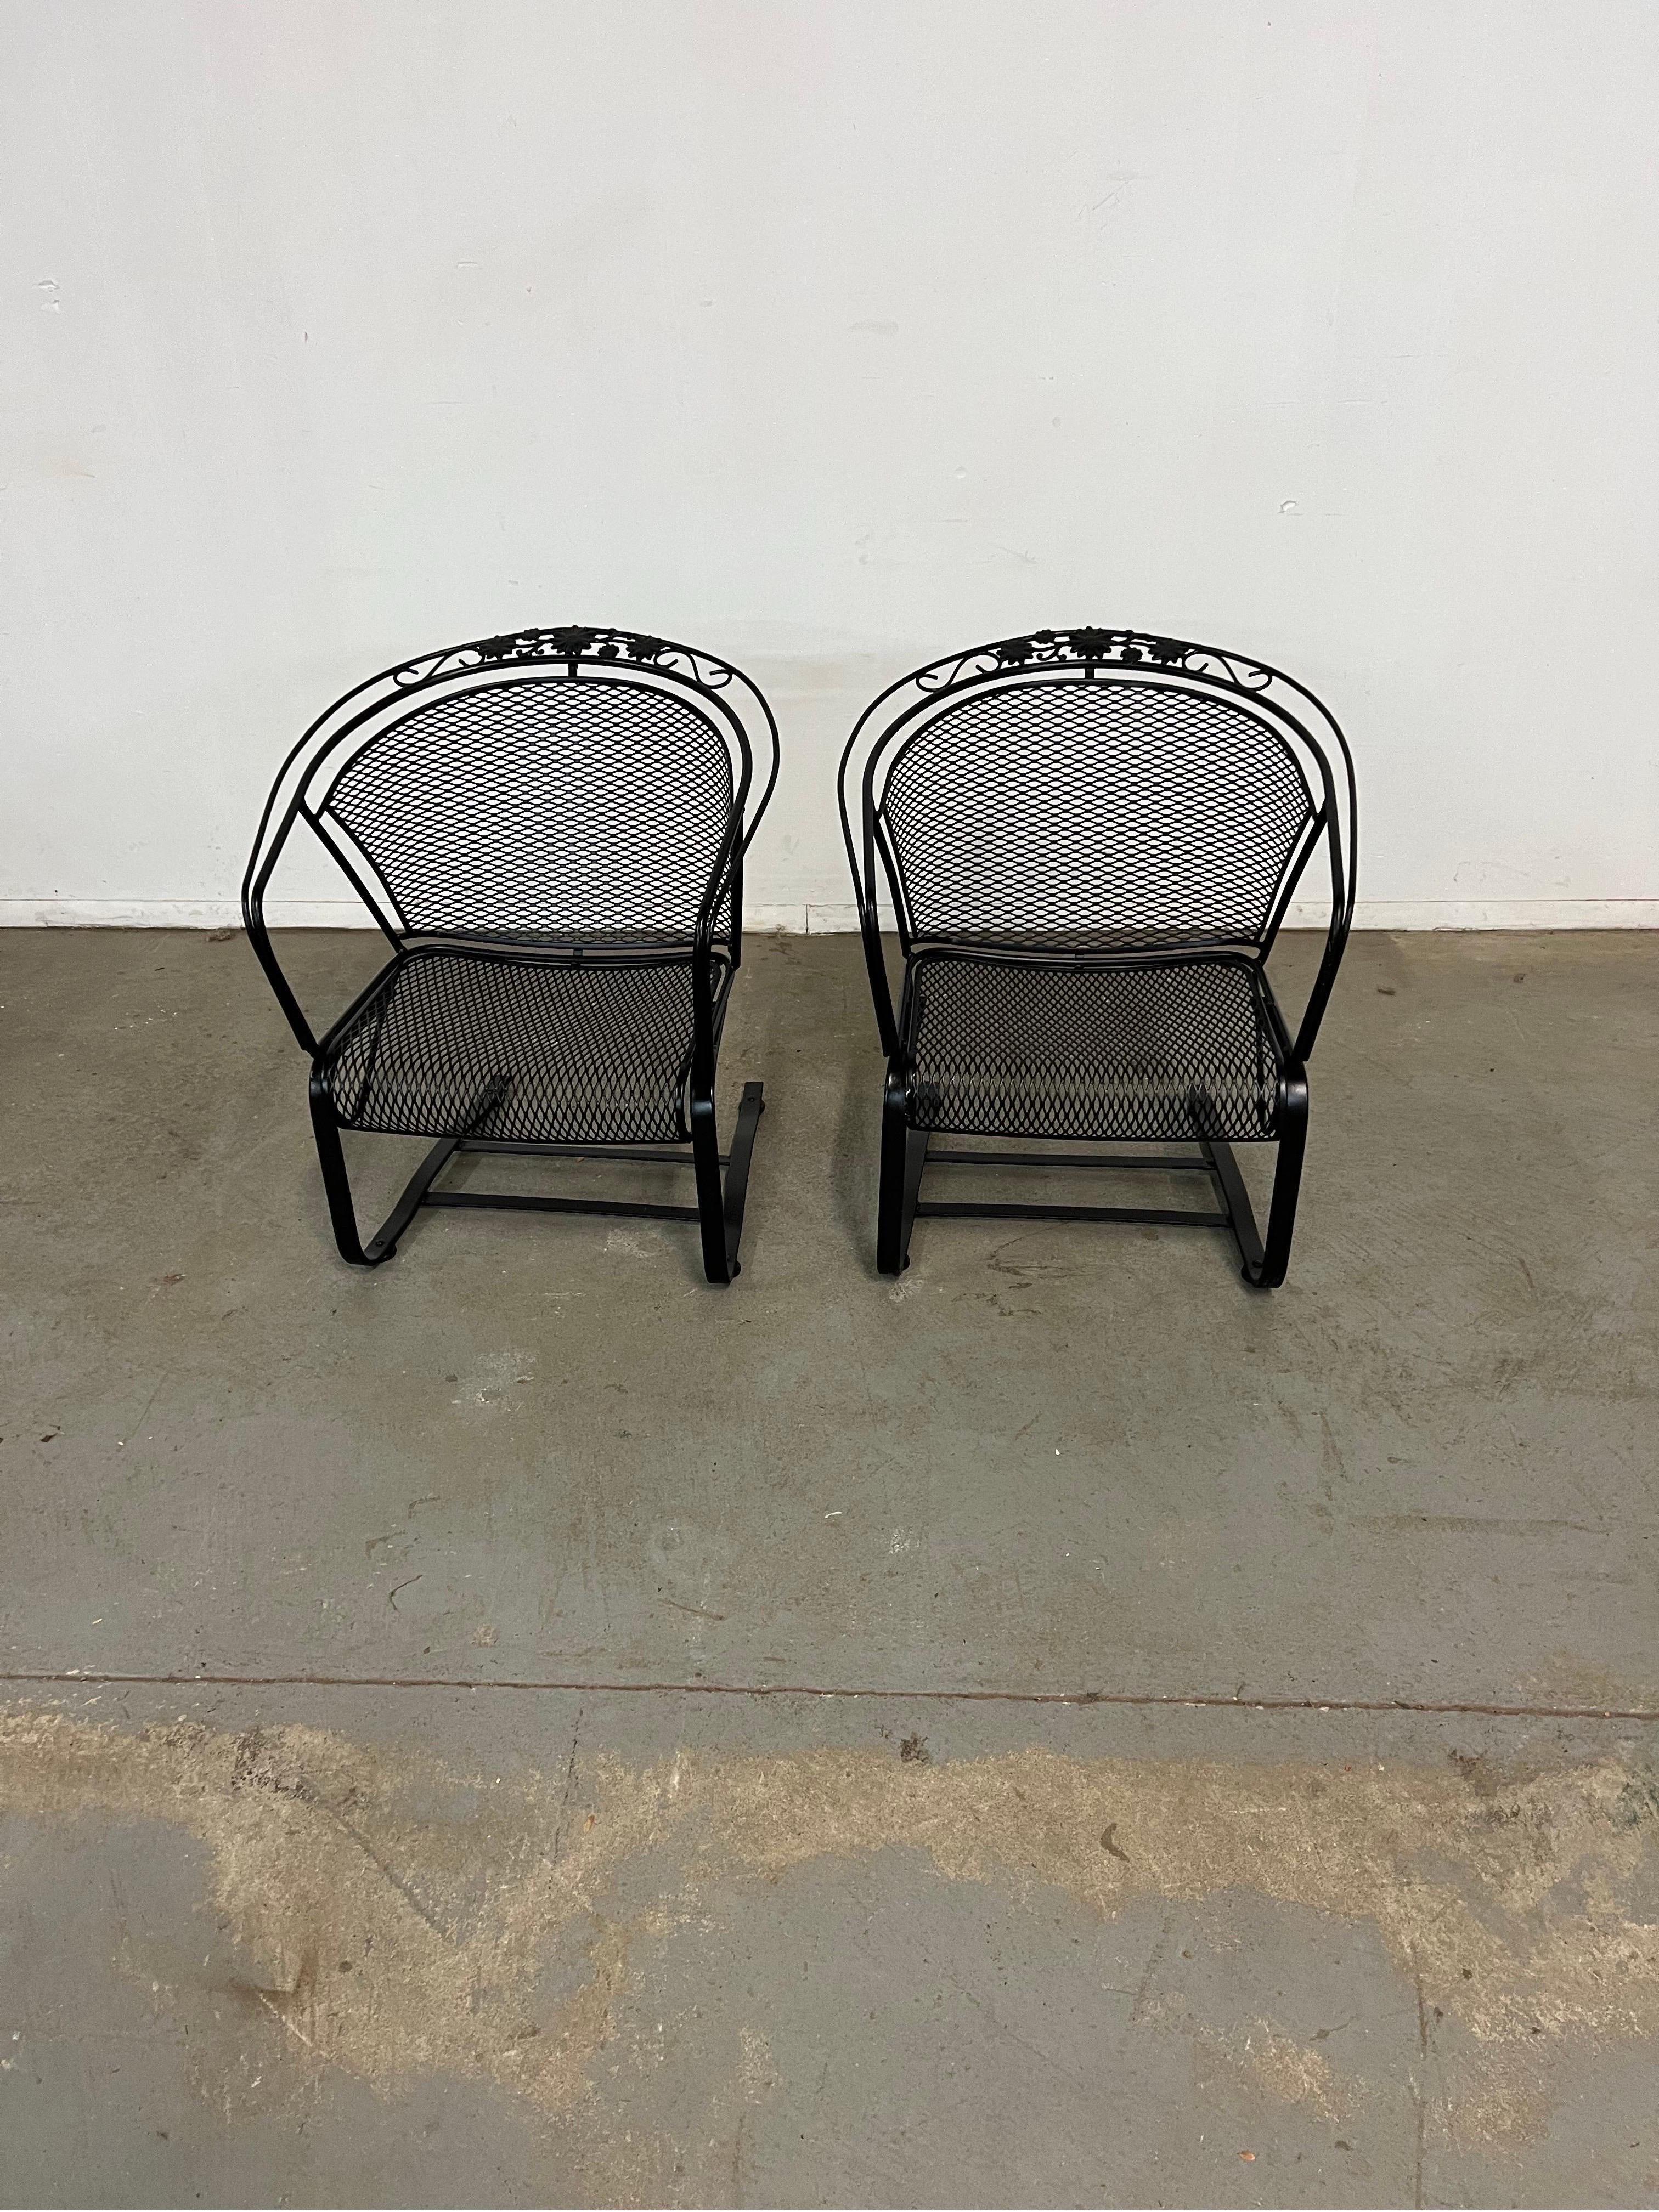 Lot de 2 chaises d'extérieur à dossier incurvé Cantilever/Springer Mid-Century Modern Salterini
Nous vous proposons un fauteuil d'extérieur Cantilever/Springer à dossier incurvé de style Salterini (circa 1960's). Le fer forgé émaillé et tressé